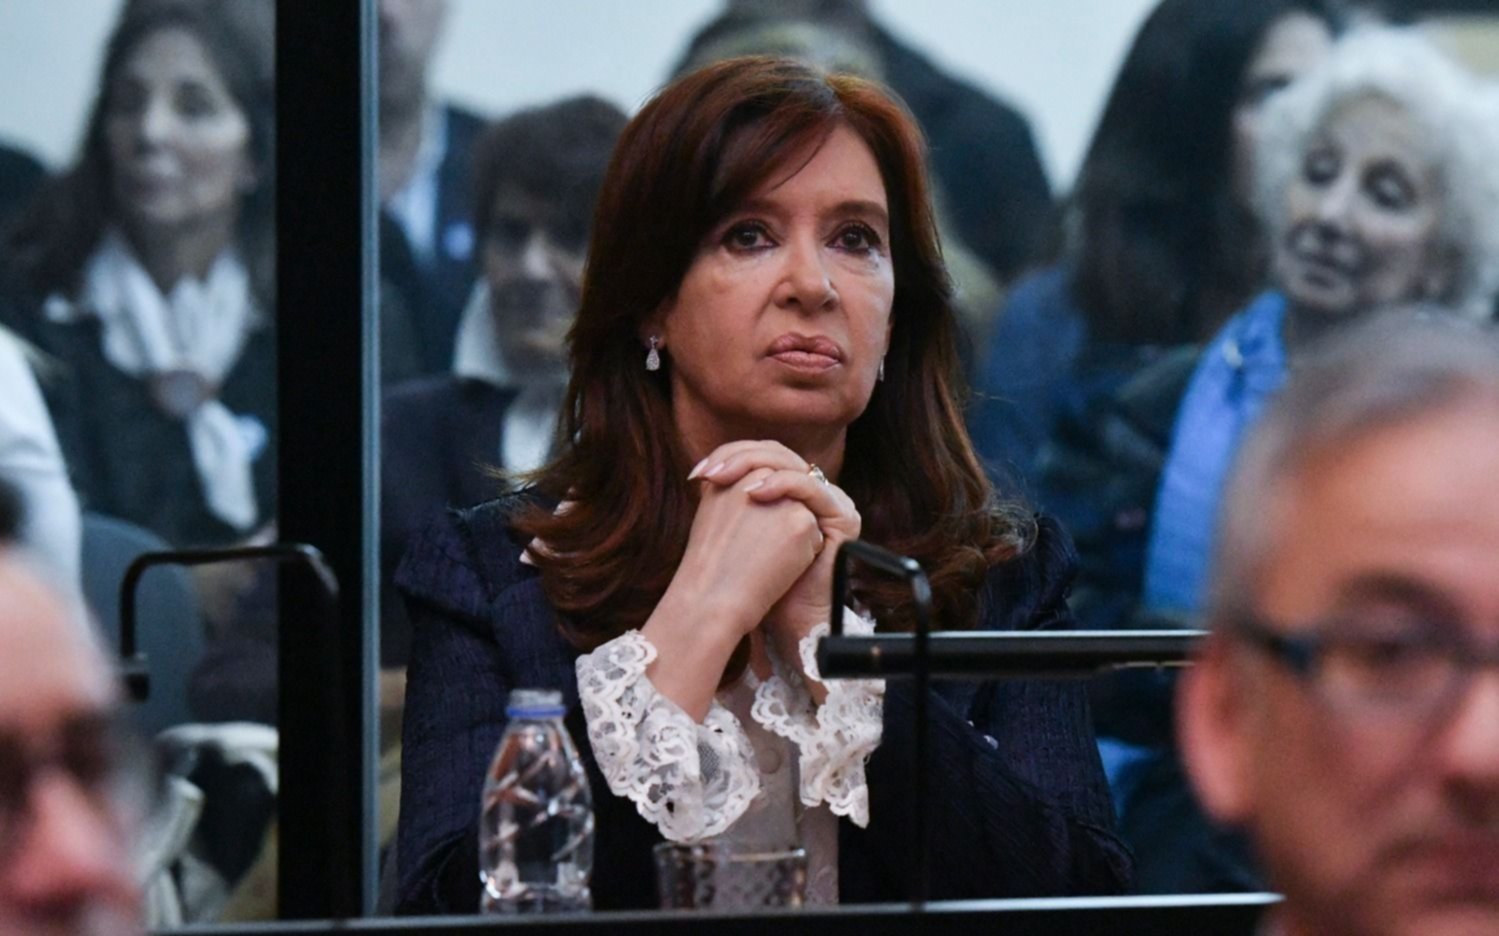 Se oponen al pedido de Cristina Kirchner de viajar a Cuba el mes próximo